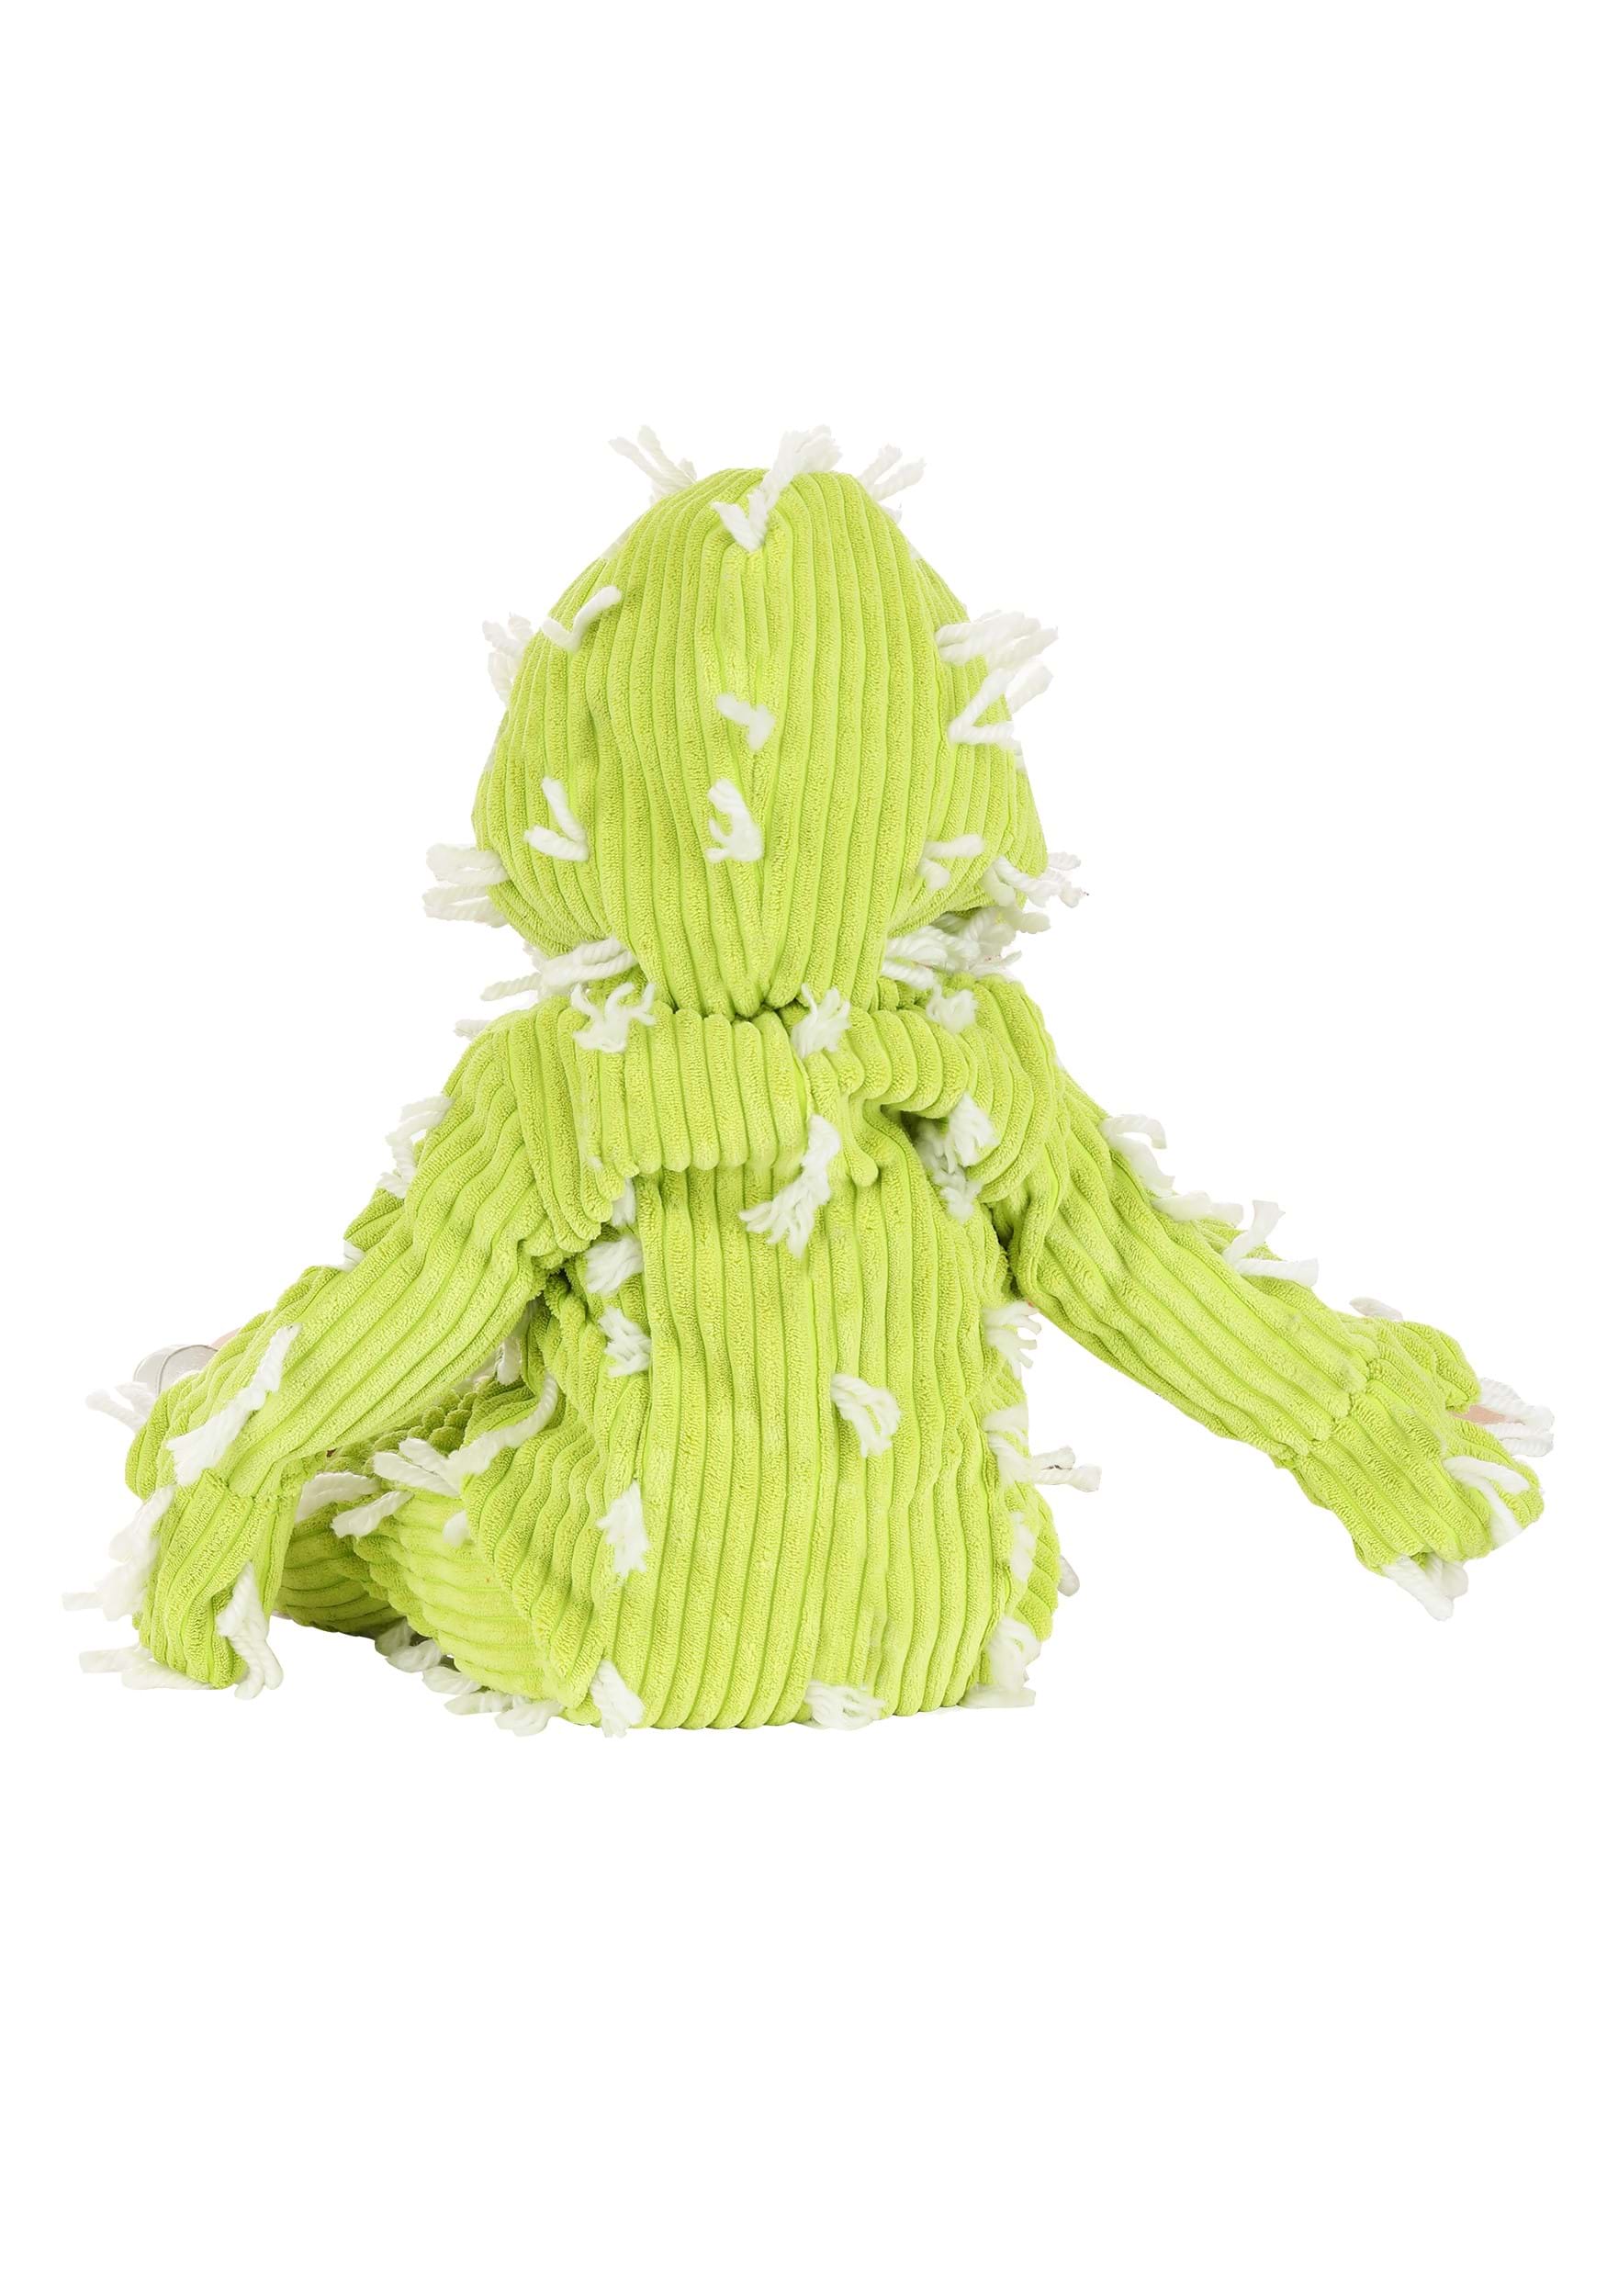 Cactus Cutie Costume For Infant's